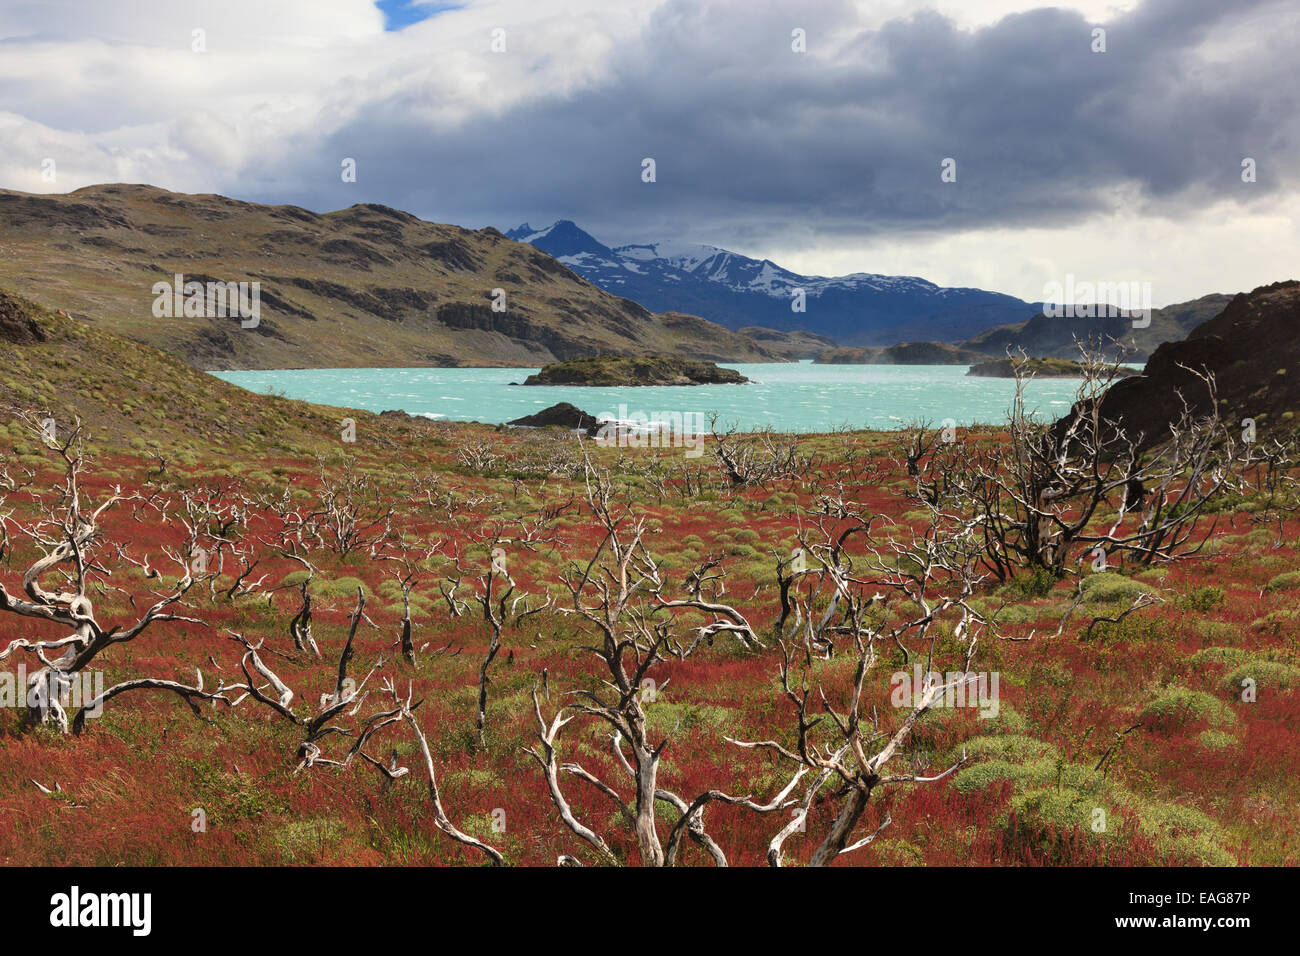 Lac, Parc National Torres del Paine, Chili Banque D'Images